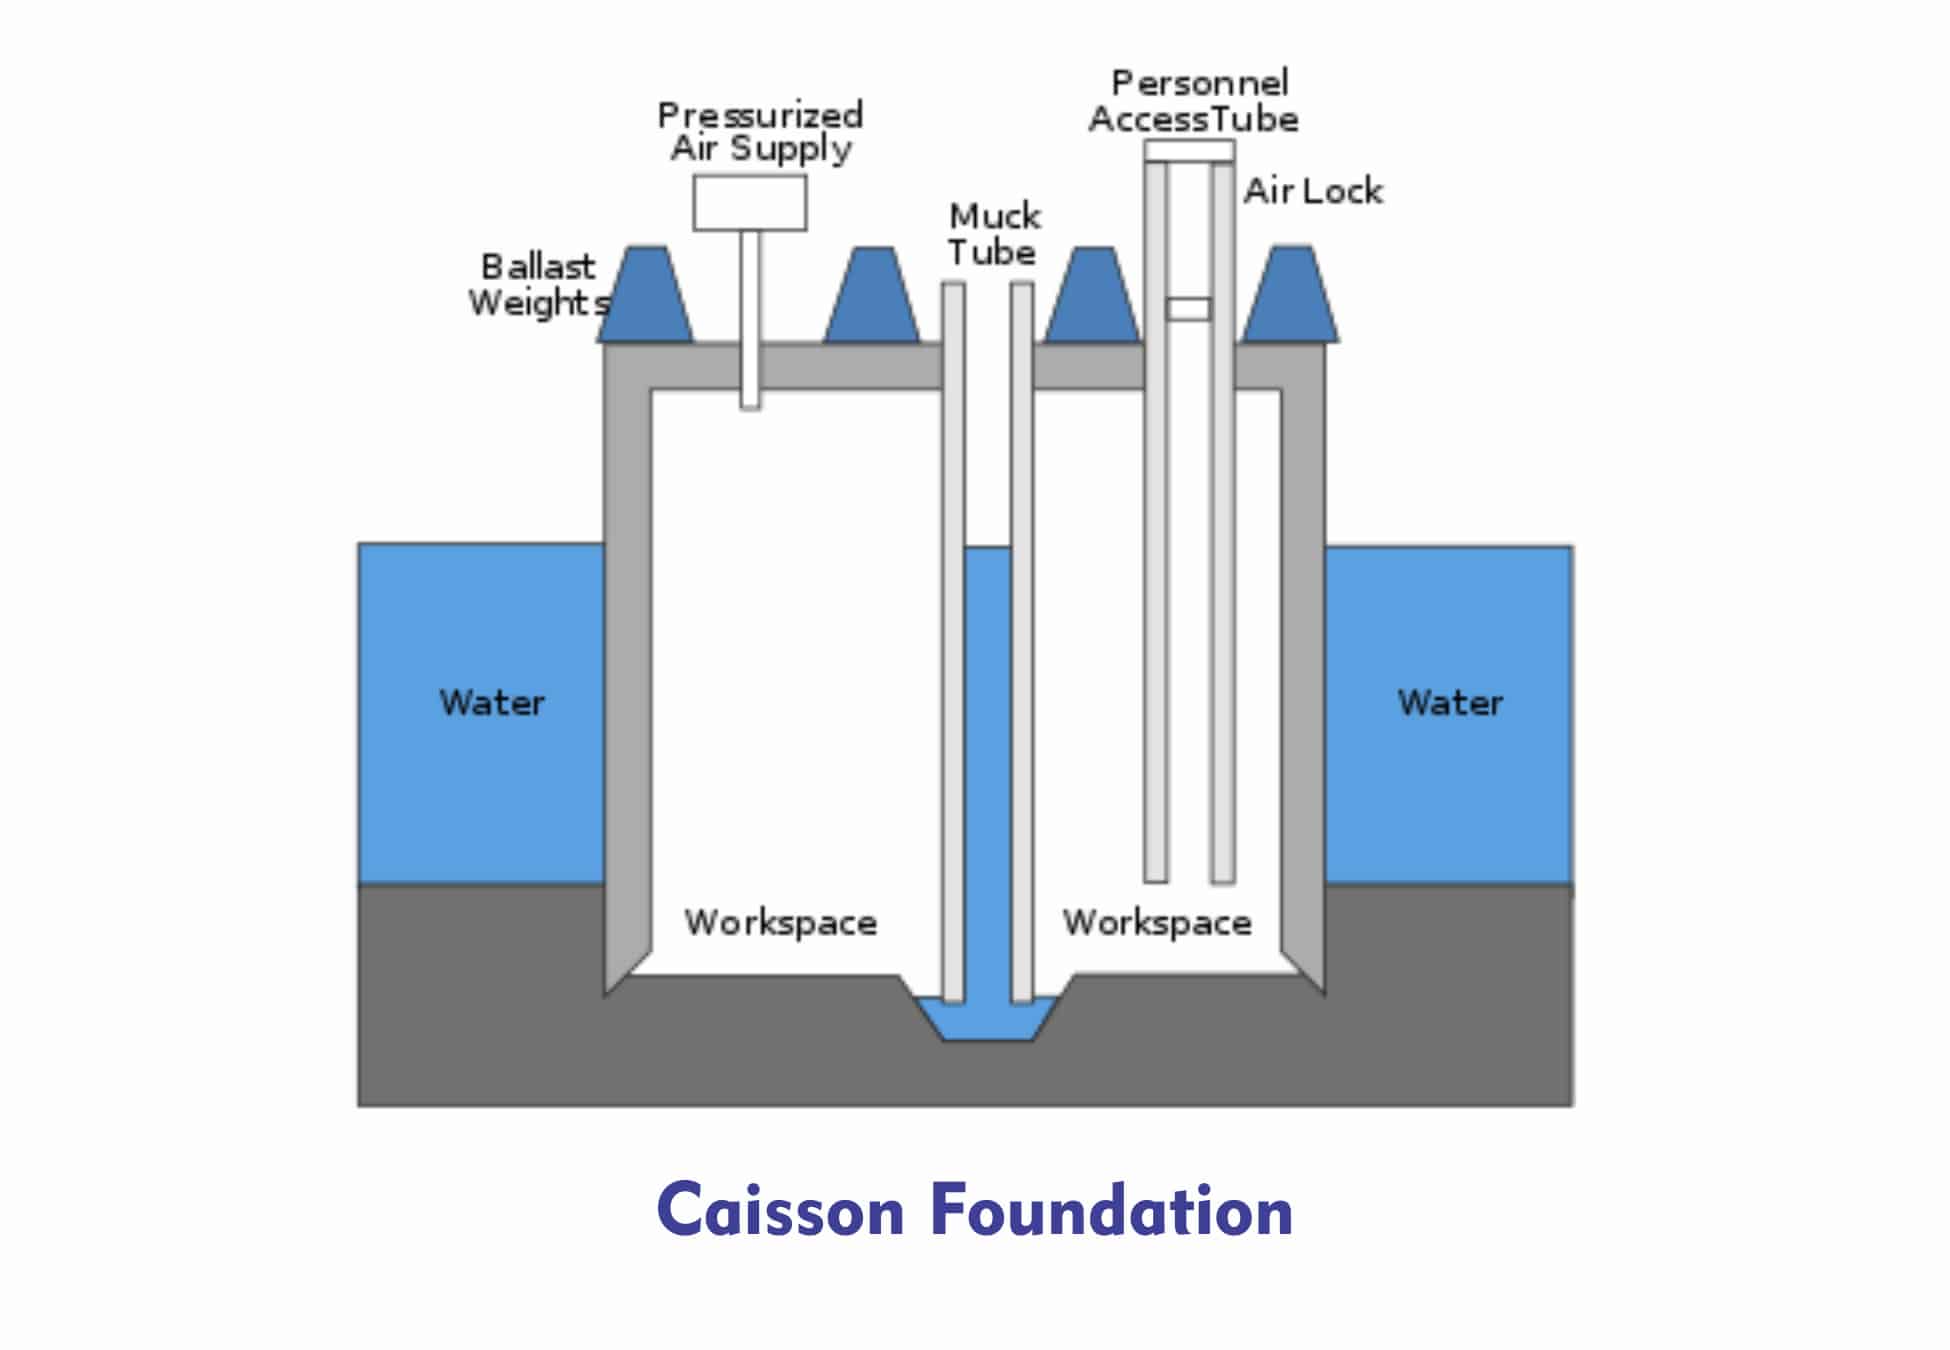 Caisson Foundation